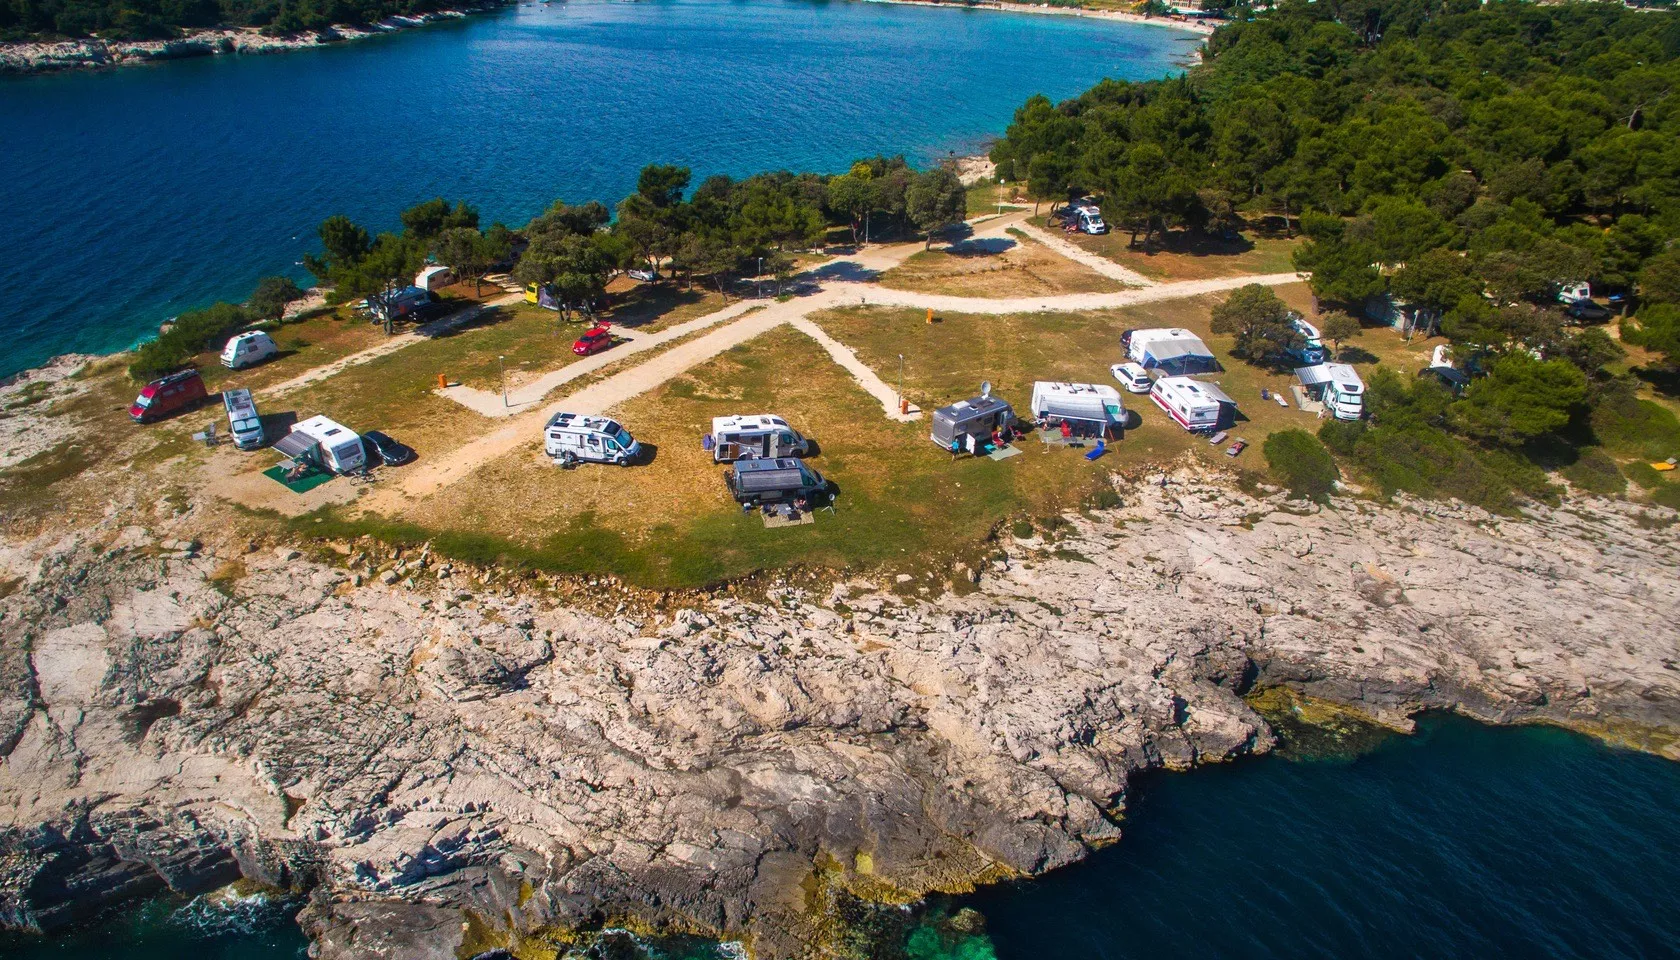 Arena Stoja Campsite in Croatia, Europe | Campsites - Rated 5.6